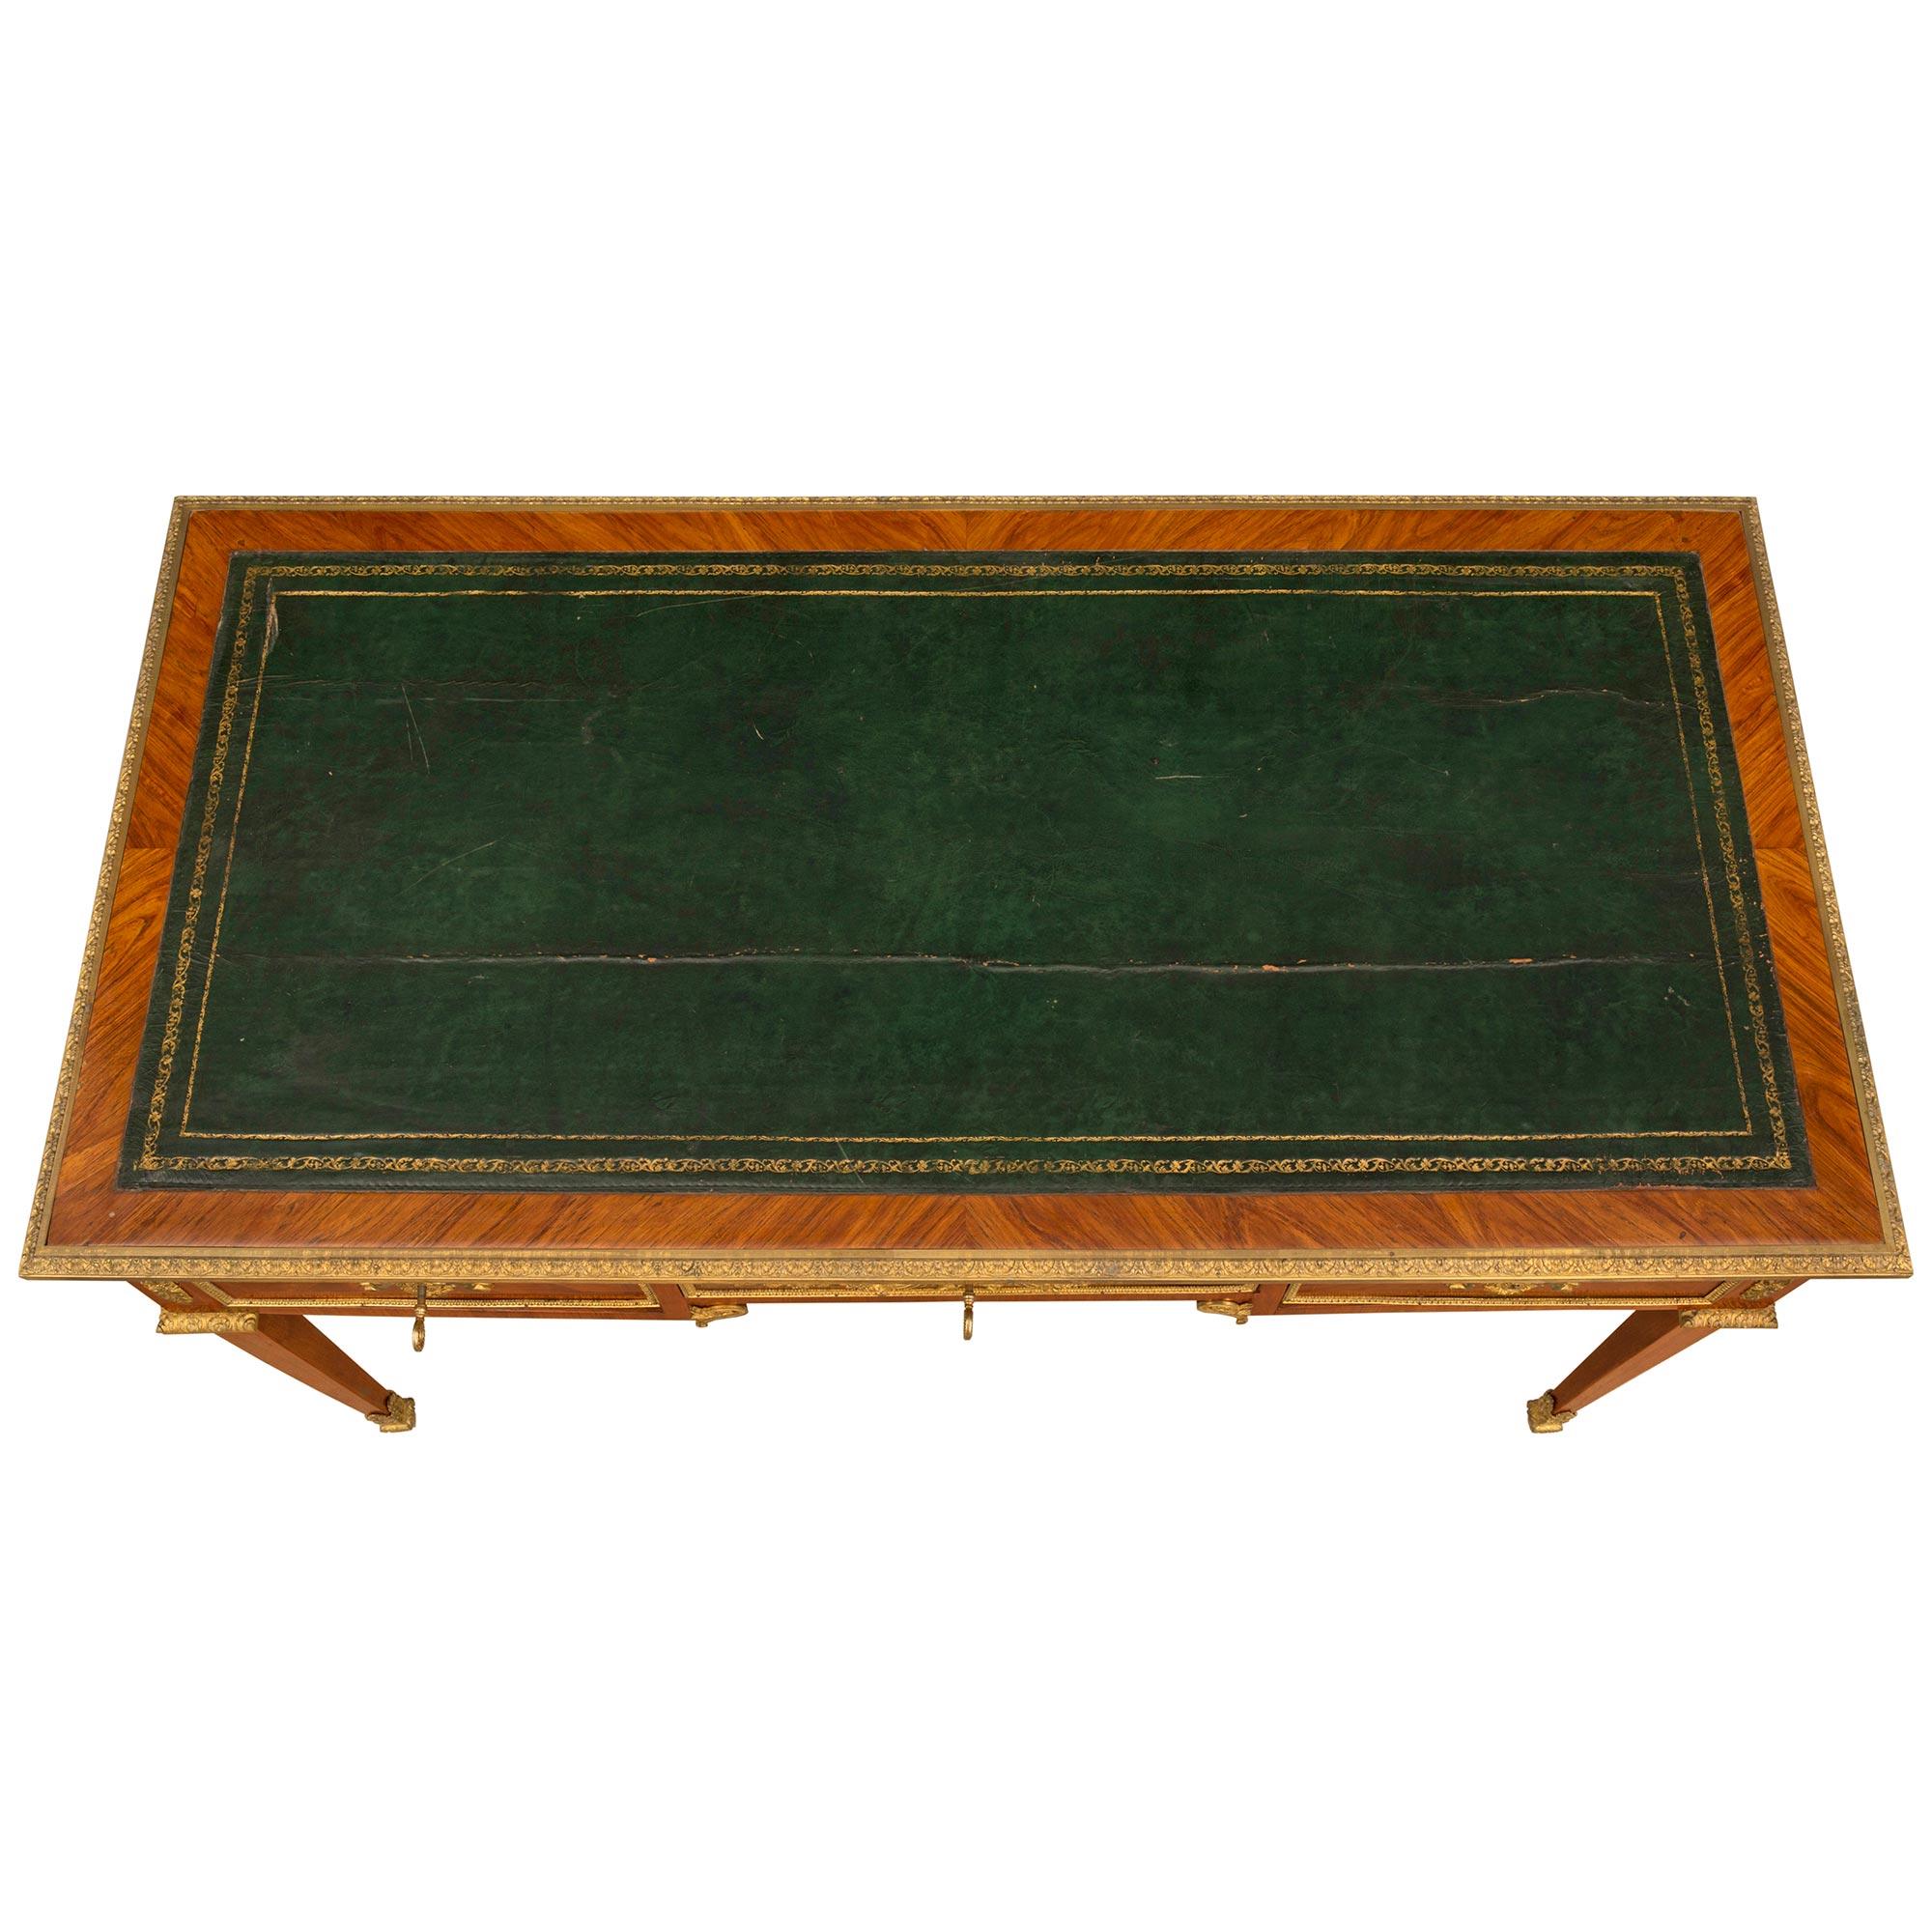 Ein eleganter und hochwertiger französischer Schreibtisch aus dem 18. Jahrhundert aus Tulipwood und Ormolu. Die drei Schubladen Schreibtisch wird von vier feinen quadratischen konischen Beinen mit schönen verschnörkelten Blatt und Akanthusblatt